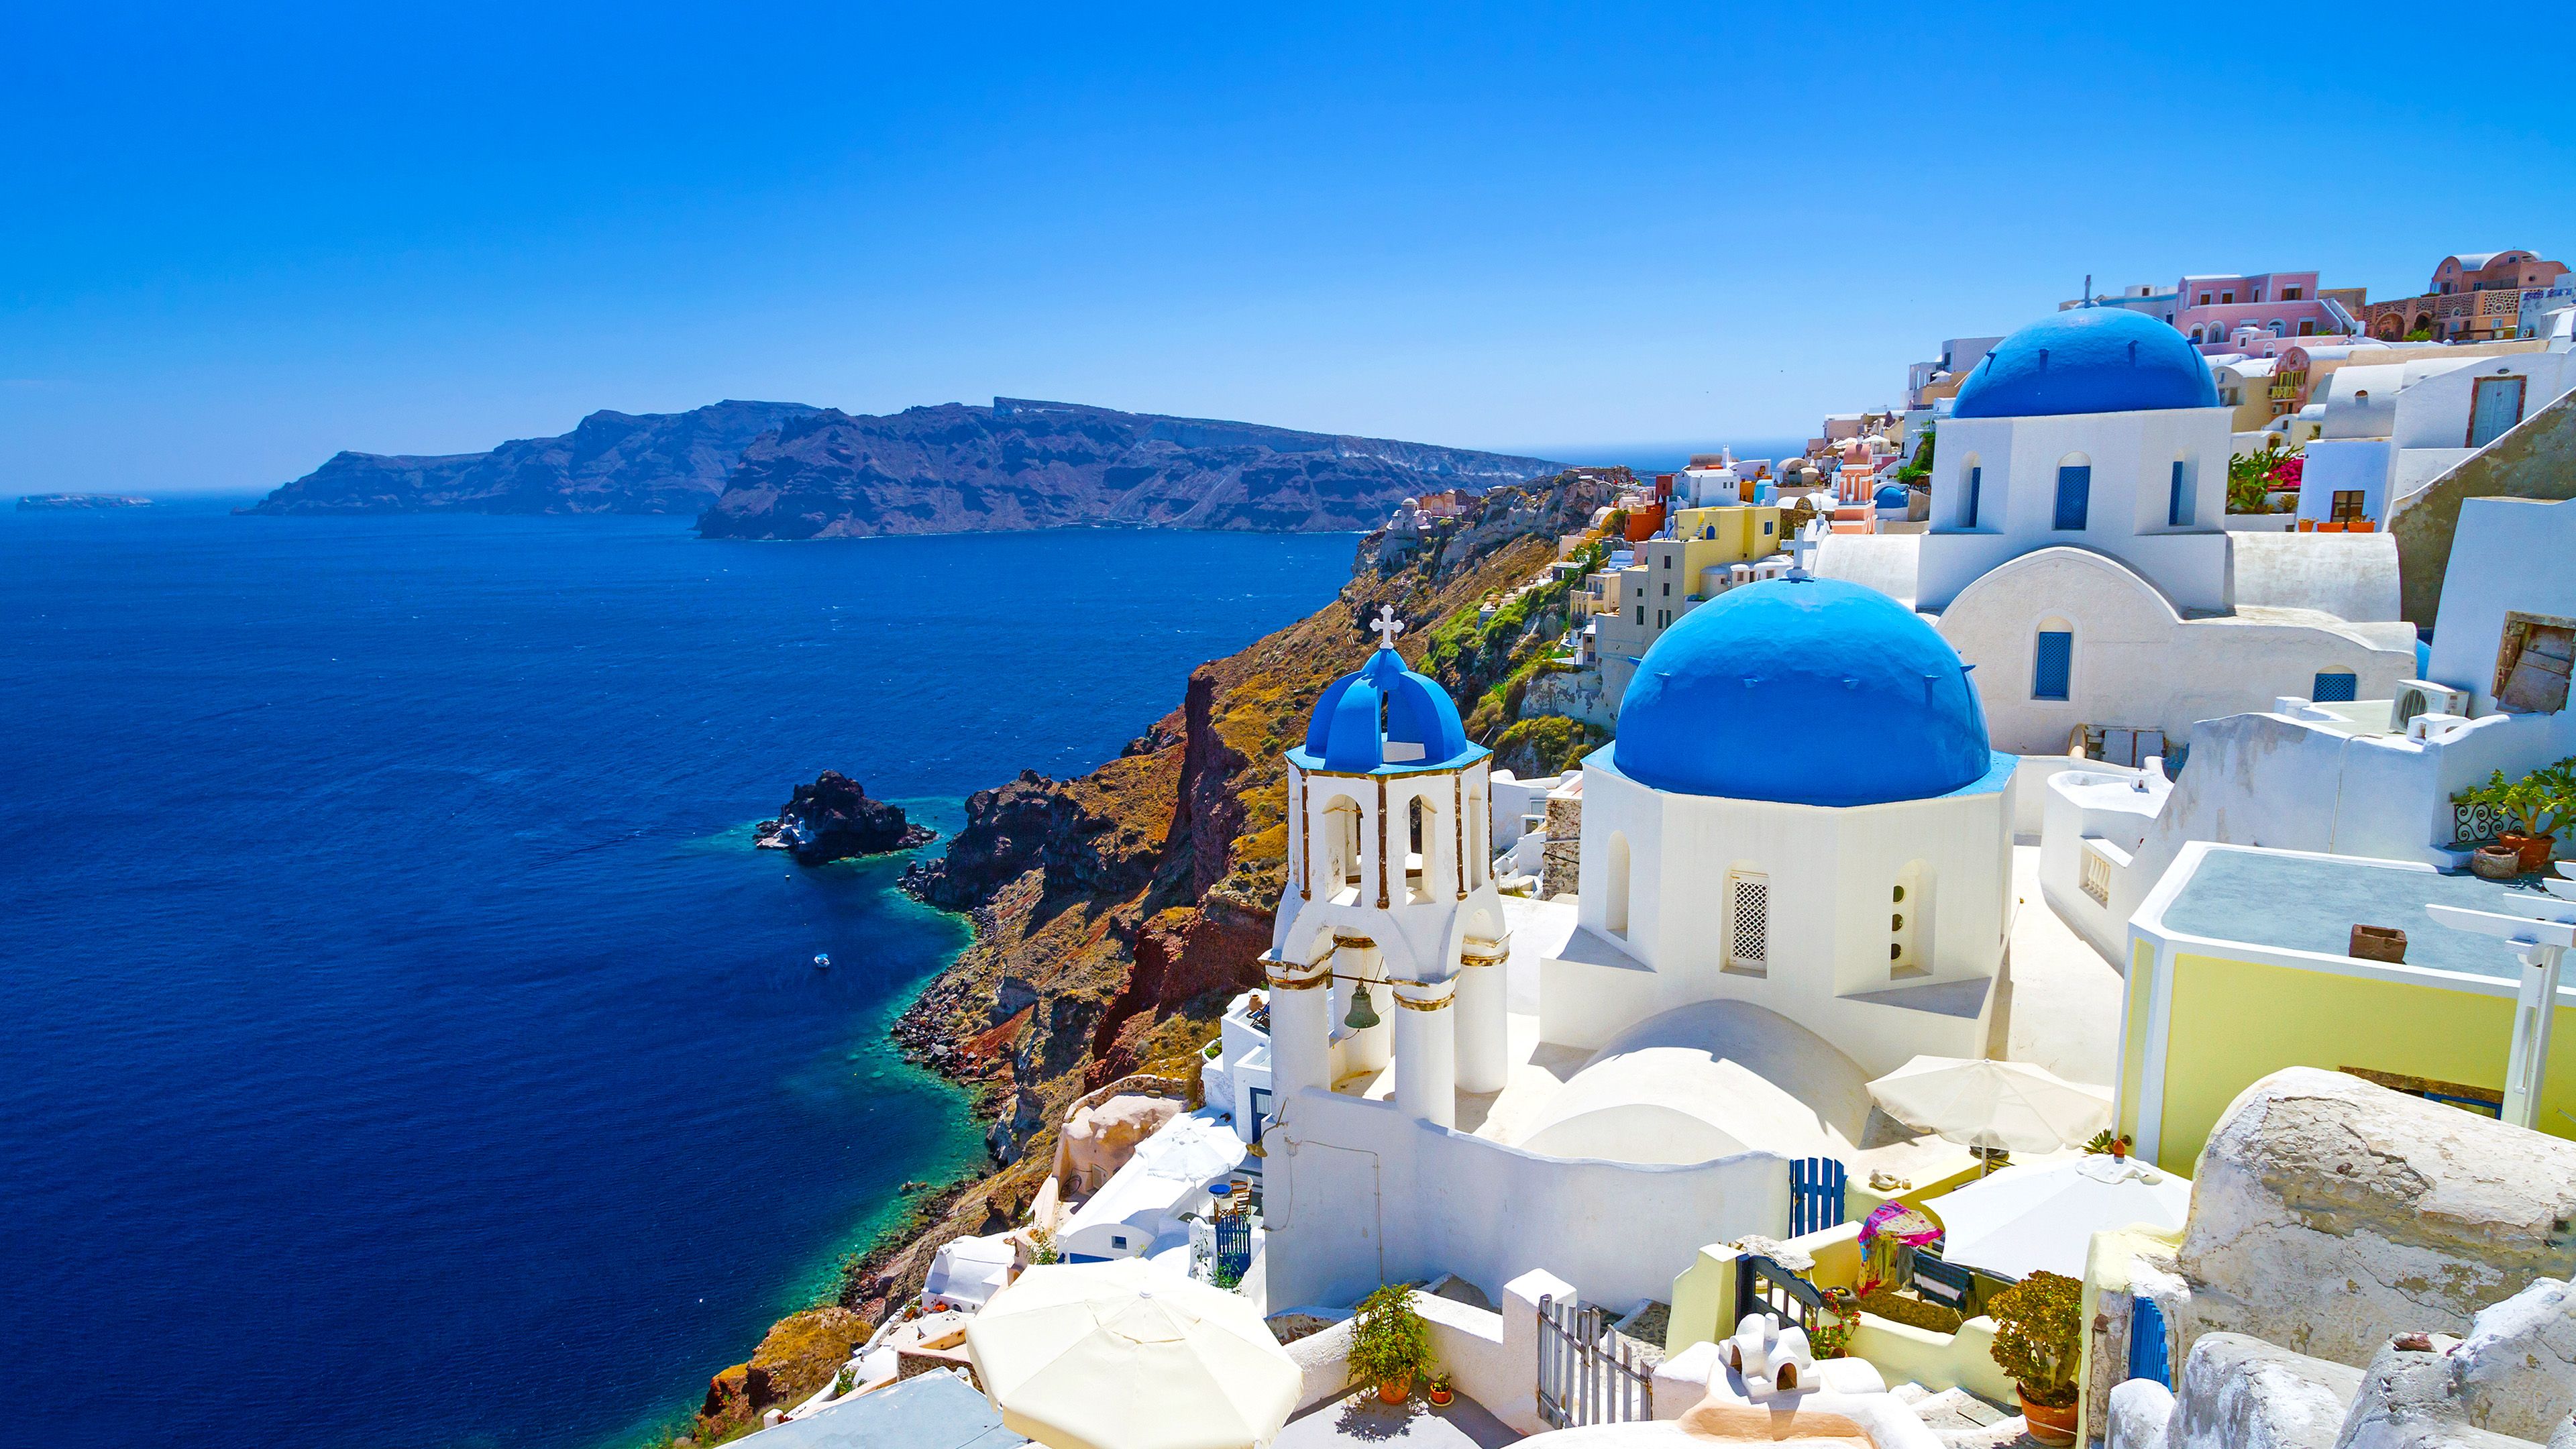 Hình nền máy tính Hy Lạp miễn phí sẽ mang đến những khung cảnh tuyệt đẹp nhất về đất nước này cho thiết bị của bạn. Tải xuống các bức ảnh HD miễn phí để trang trí cho máy tính của bạn. Khám phá những hình nền độc đáo, phù hợp với phong cách của bạn và thể hiện sự yêu thích với Hy Lạp.